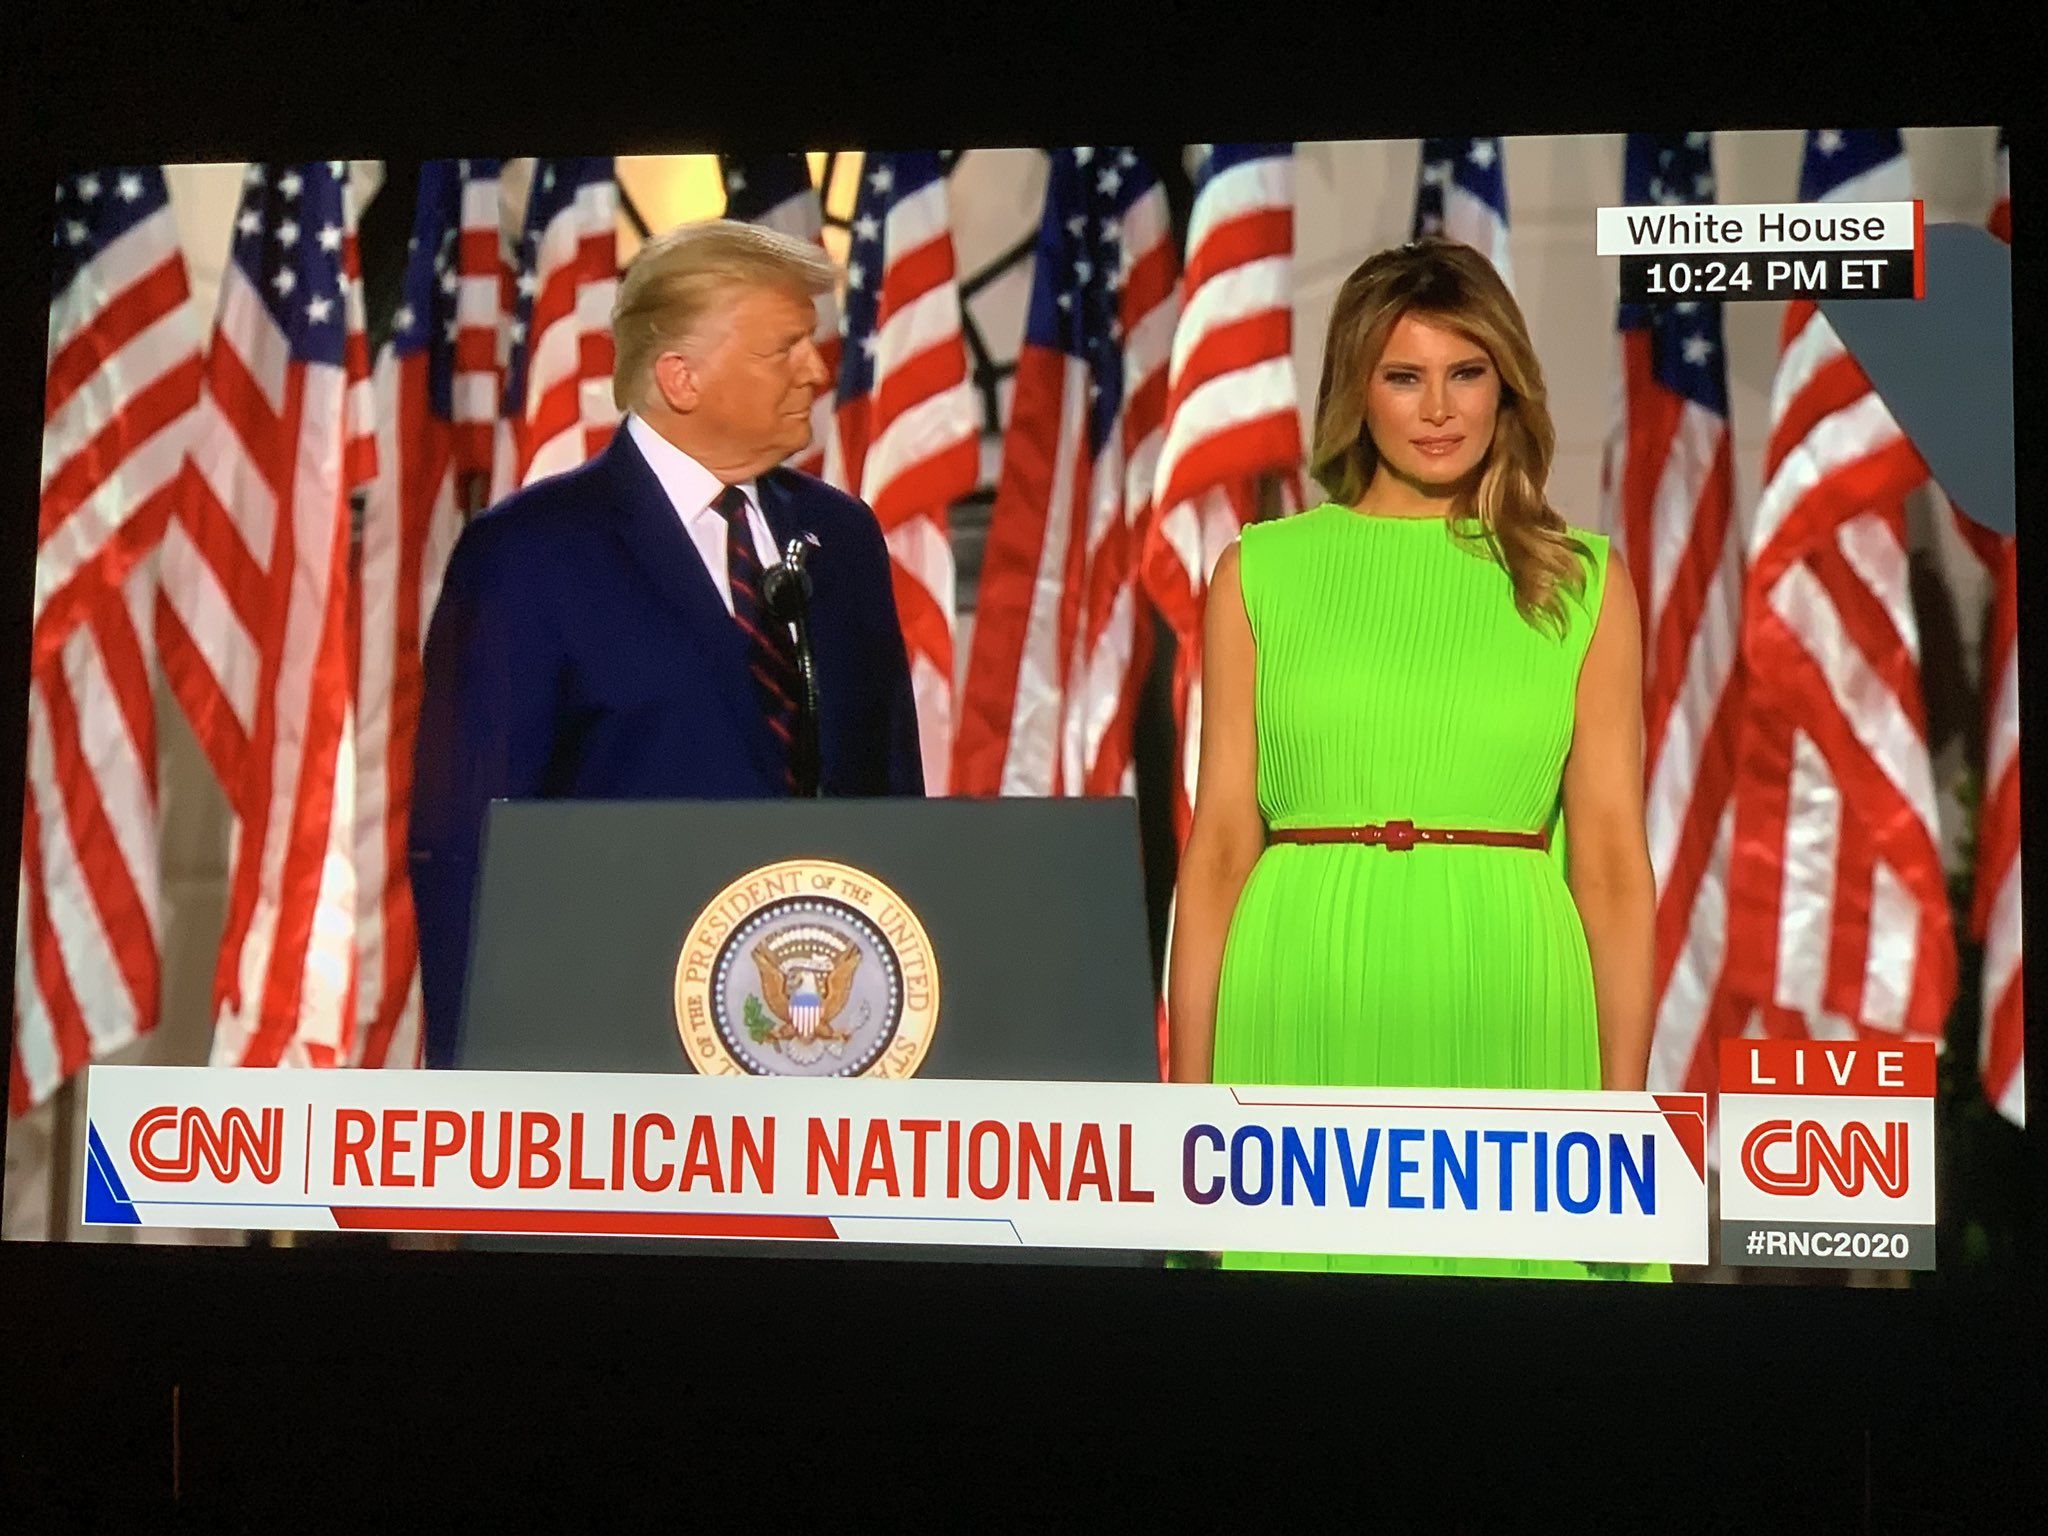 Меланія Трамп одягнула сукню кольору зеленого екрану. Це породило купу мемів в Twitter